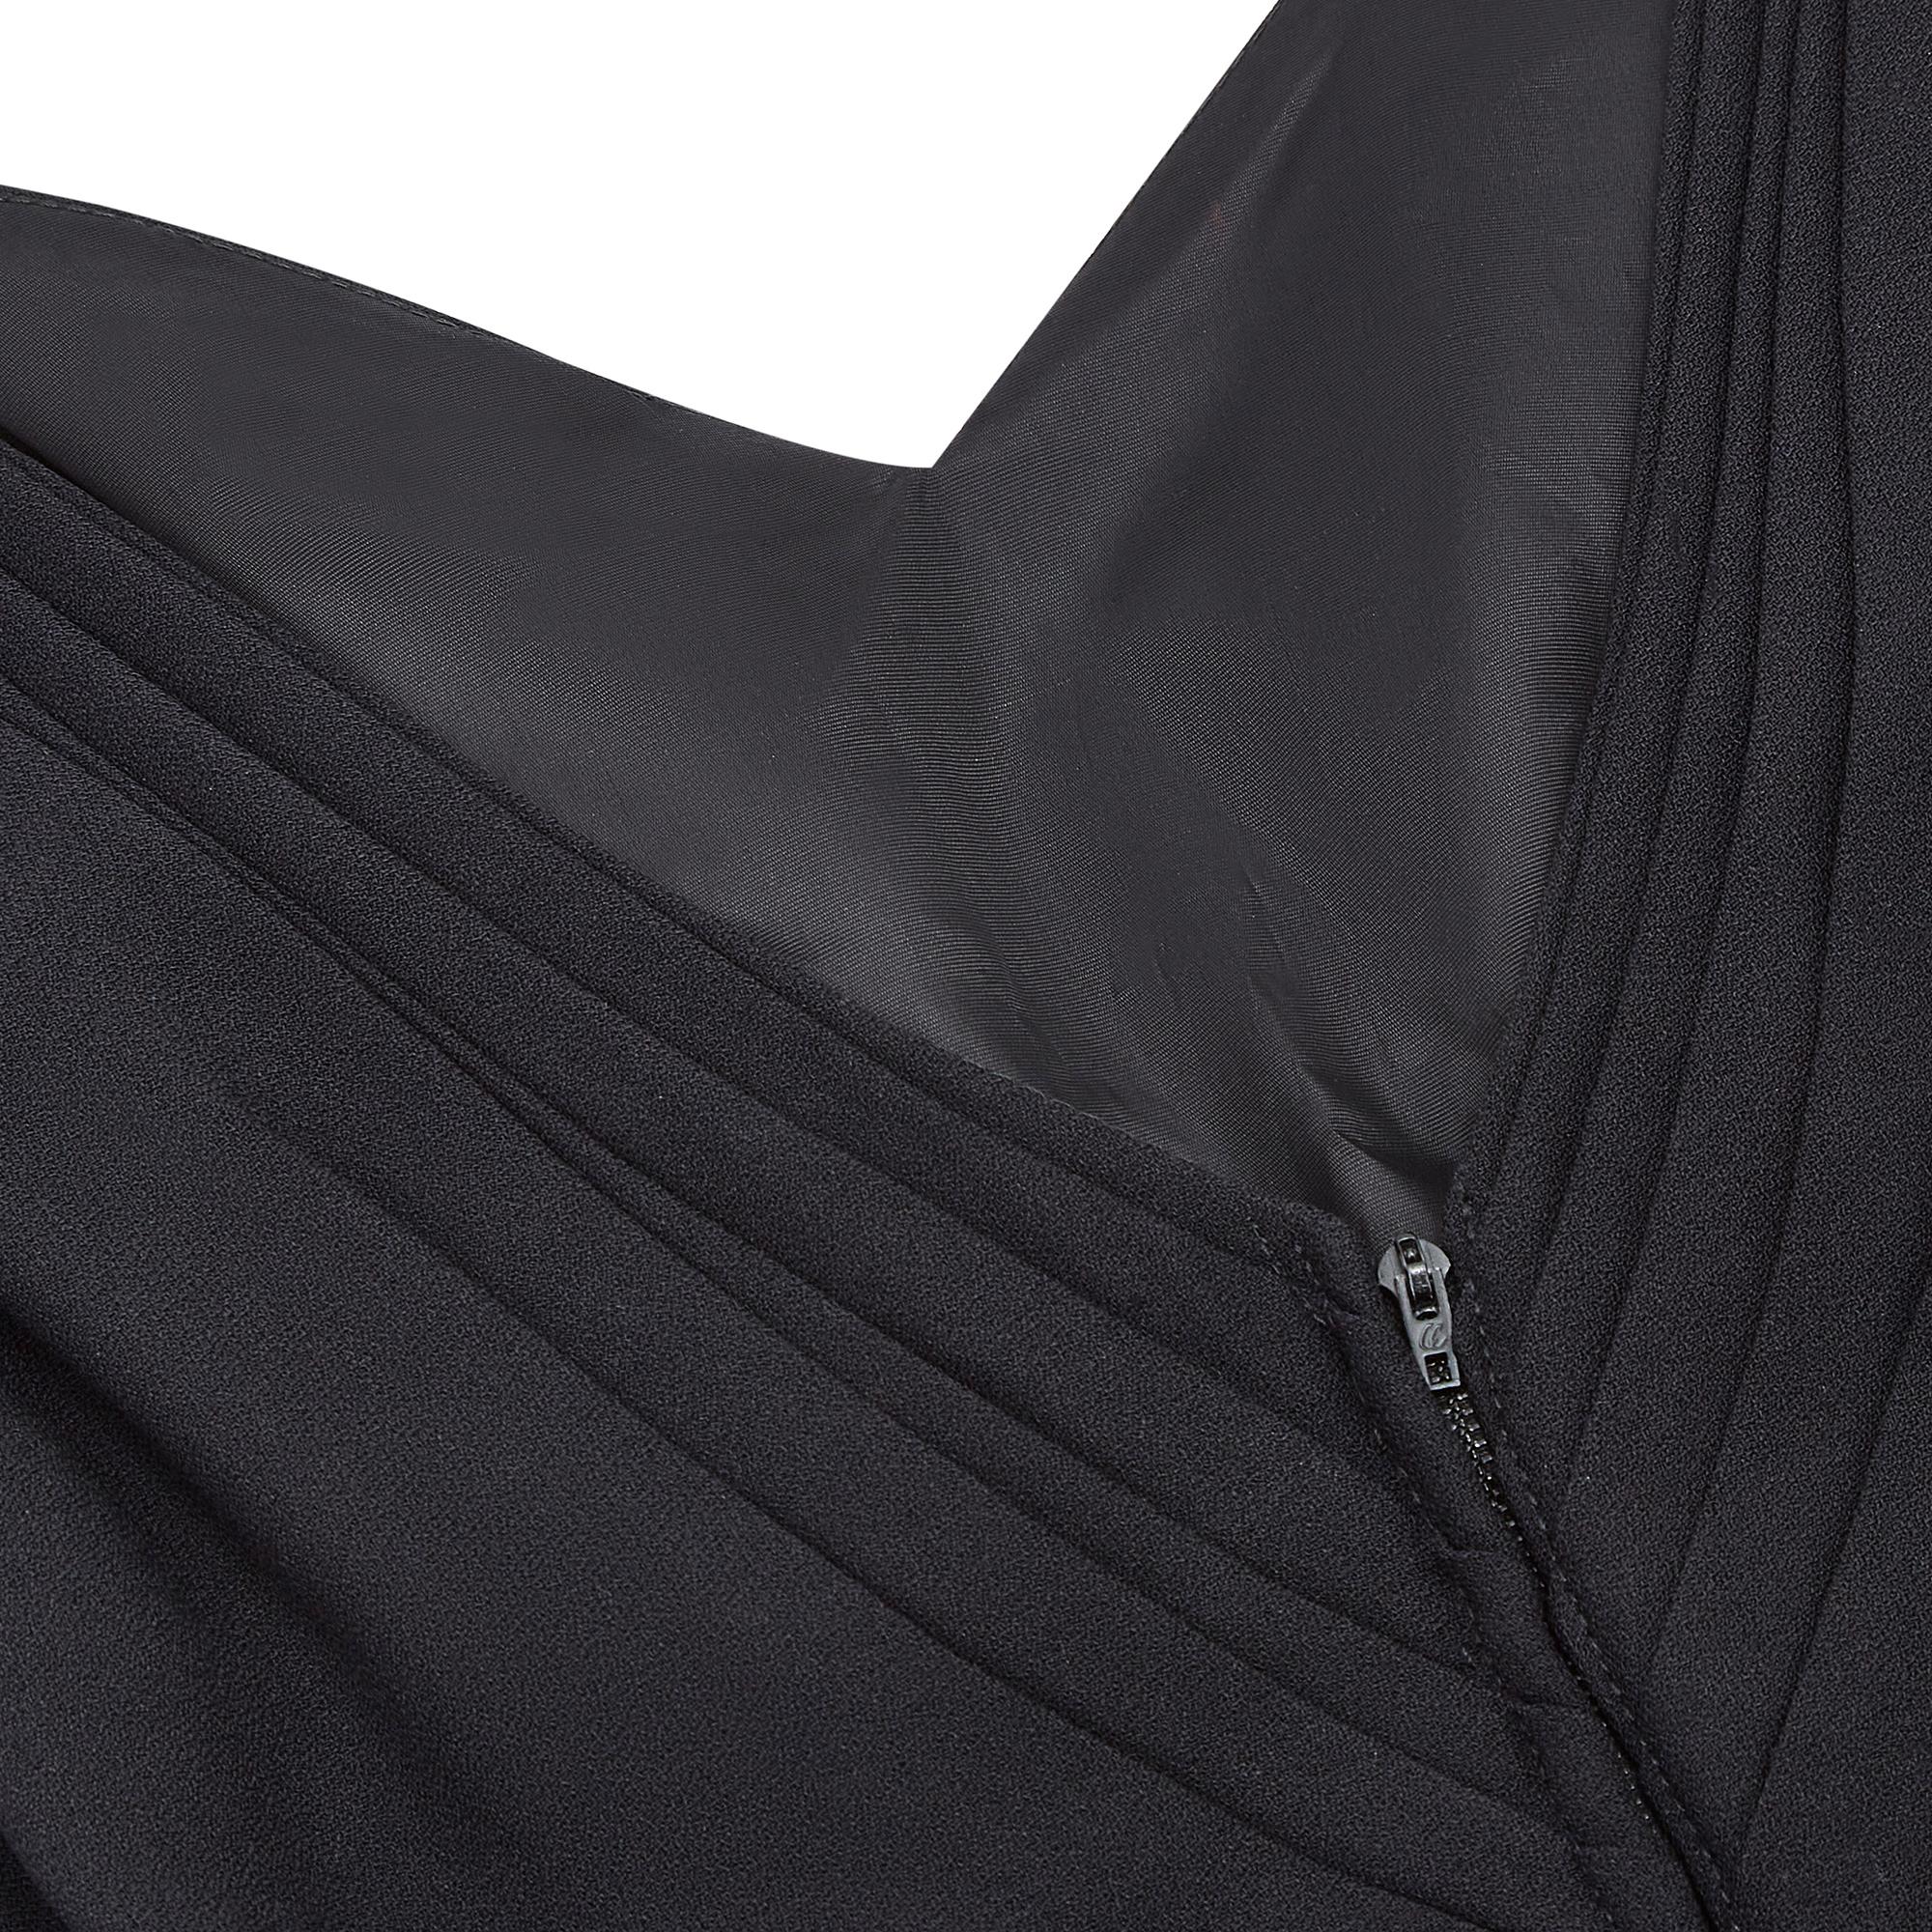 1960s Black Crepe Full Length Fishtail Evening Dress For Sale 1